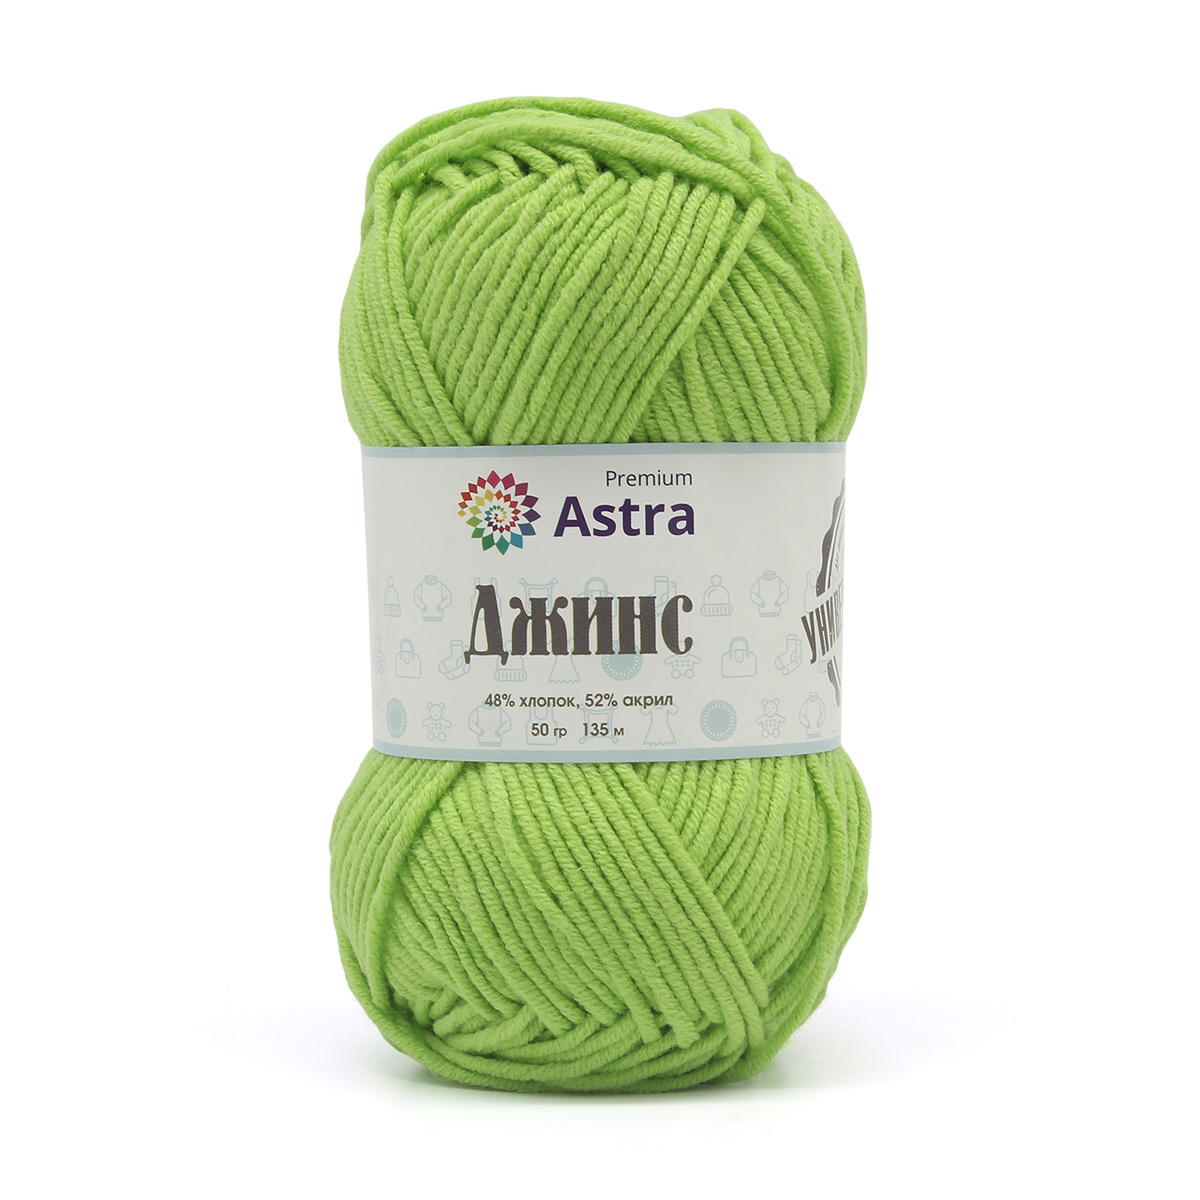 Пряжа для вязания Astra Premium Джинс 50г, 135м (хлопок, акрил) (450 зеленый), 4 мотка